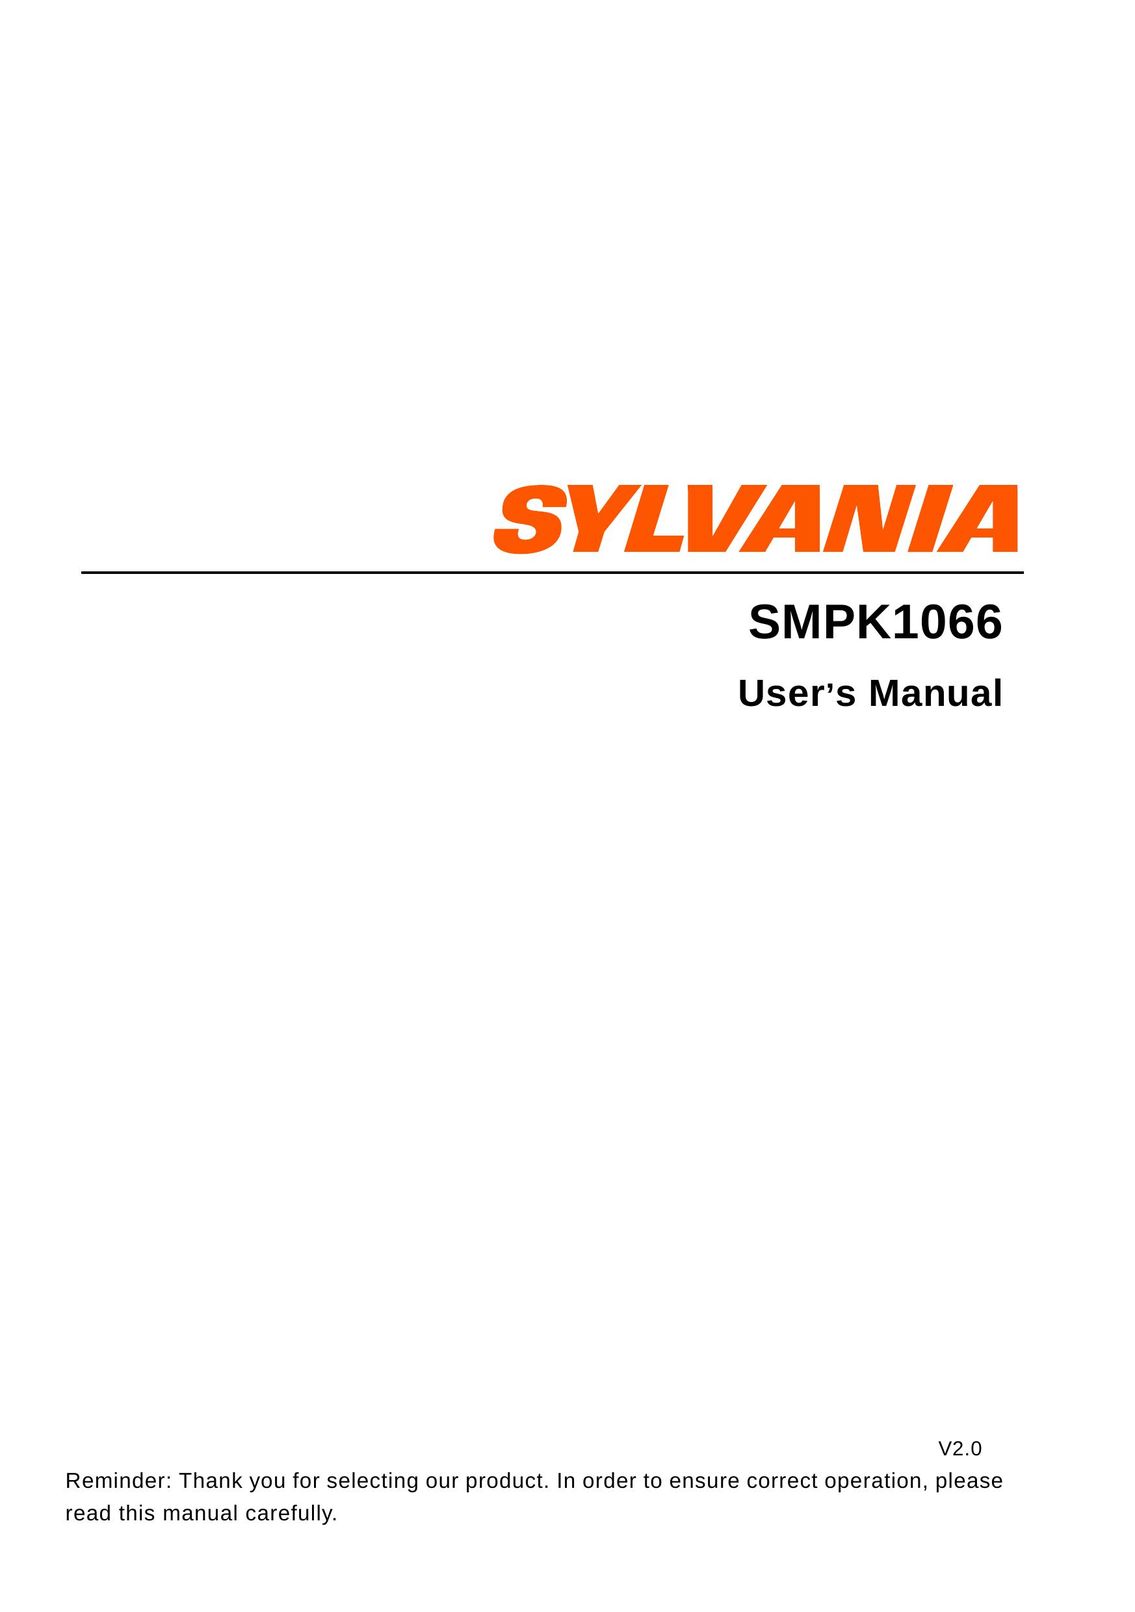 Sylvania SMPK1066 MP3 Player User Manual